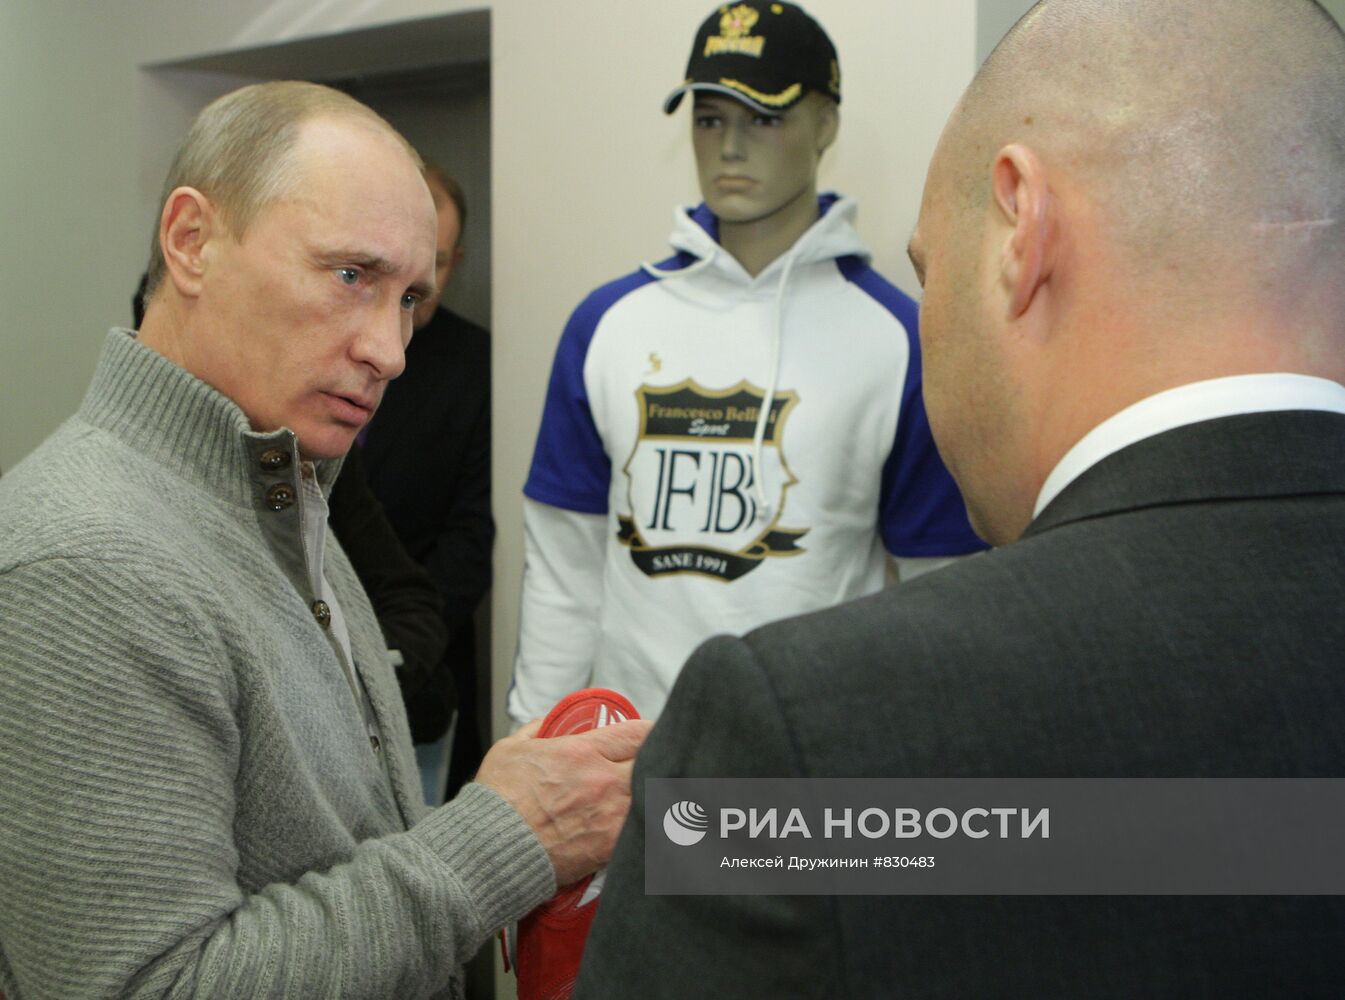 Владимир Путин посетил ФОК "Московский" в Санкт-Петербурге